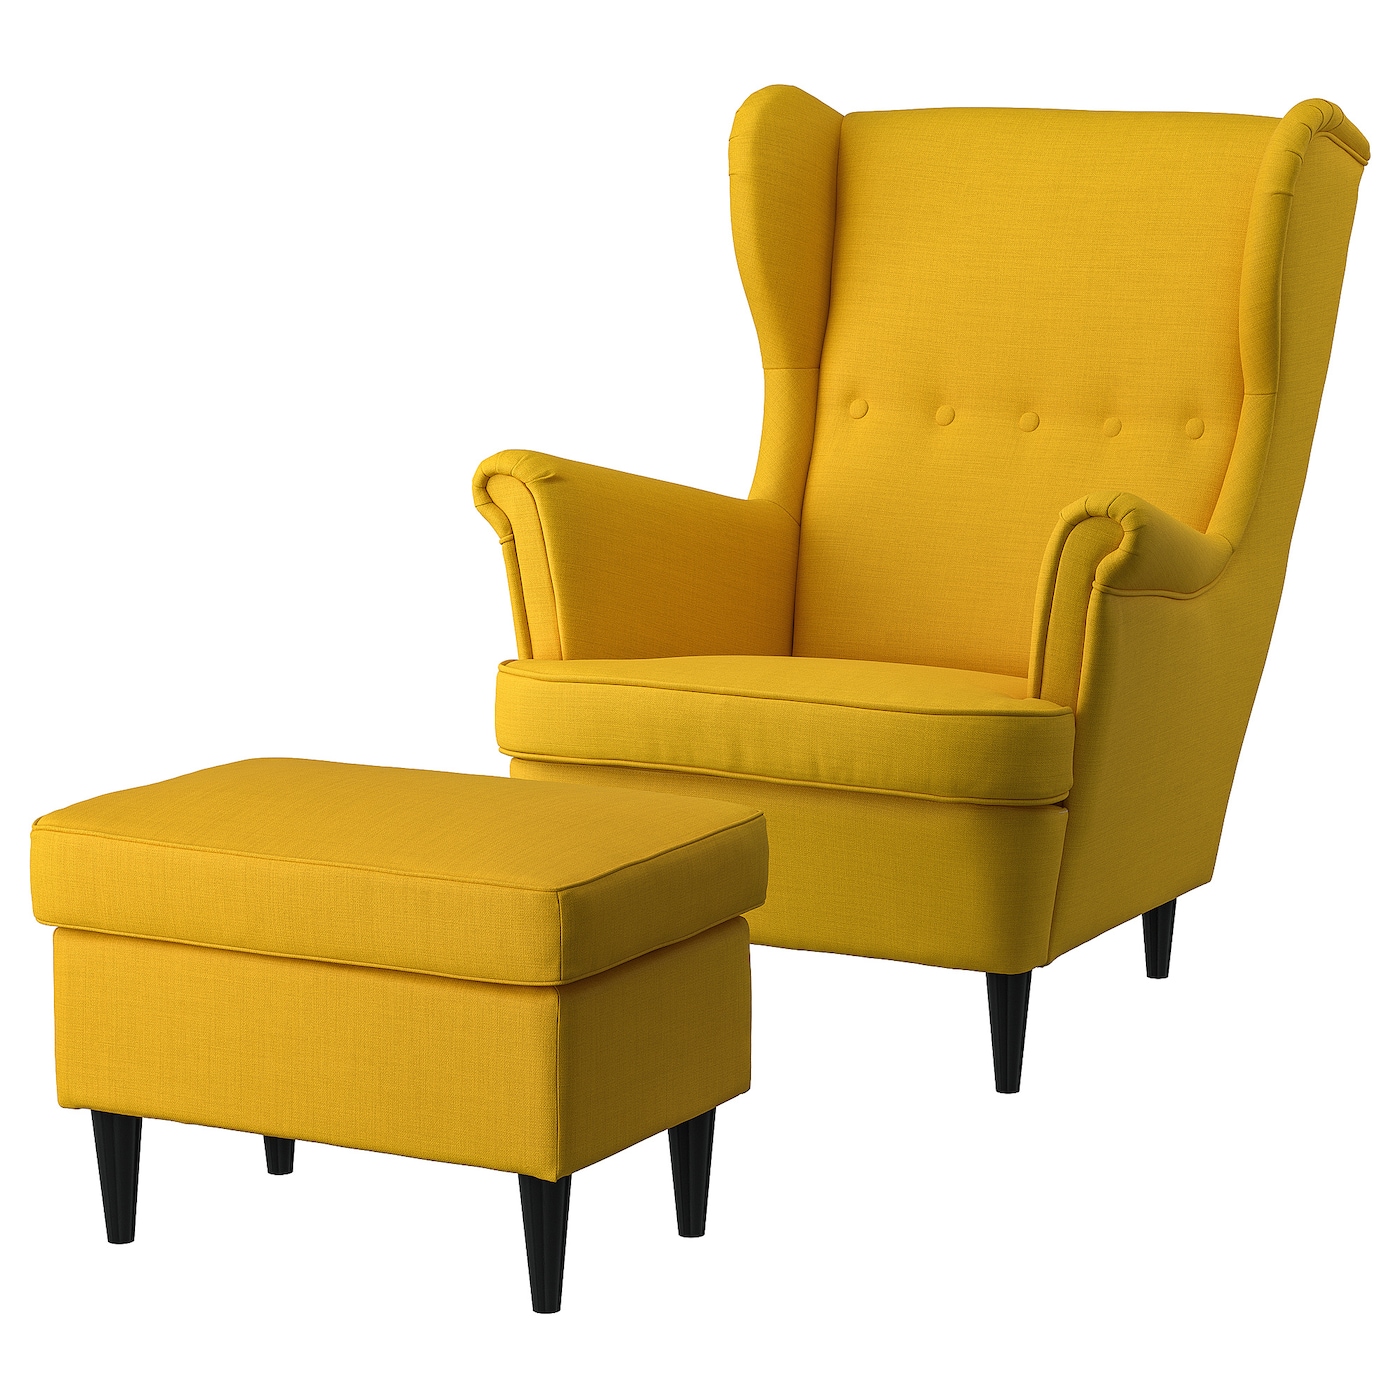 СТРАНДМОН Кресло и подставка для ног, Скифтебо желтый STRANDMON IKEA подставка для ног 7046054 7046055 7046056 желтый